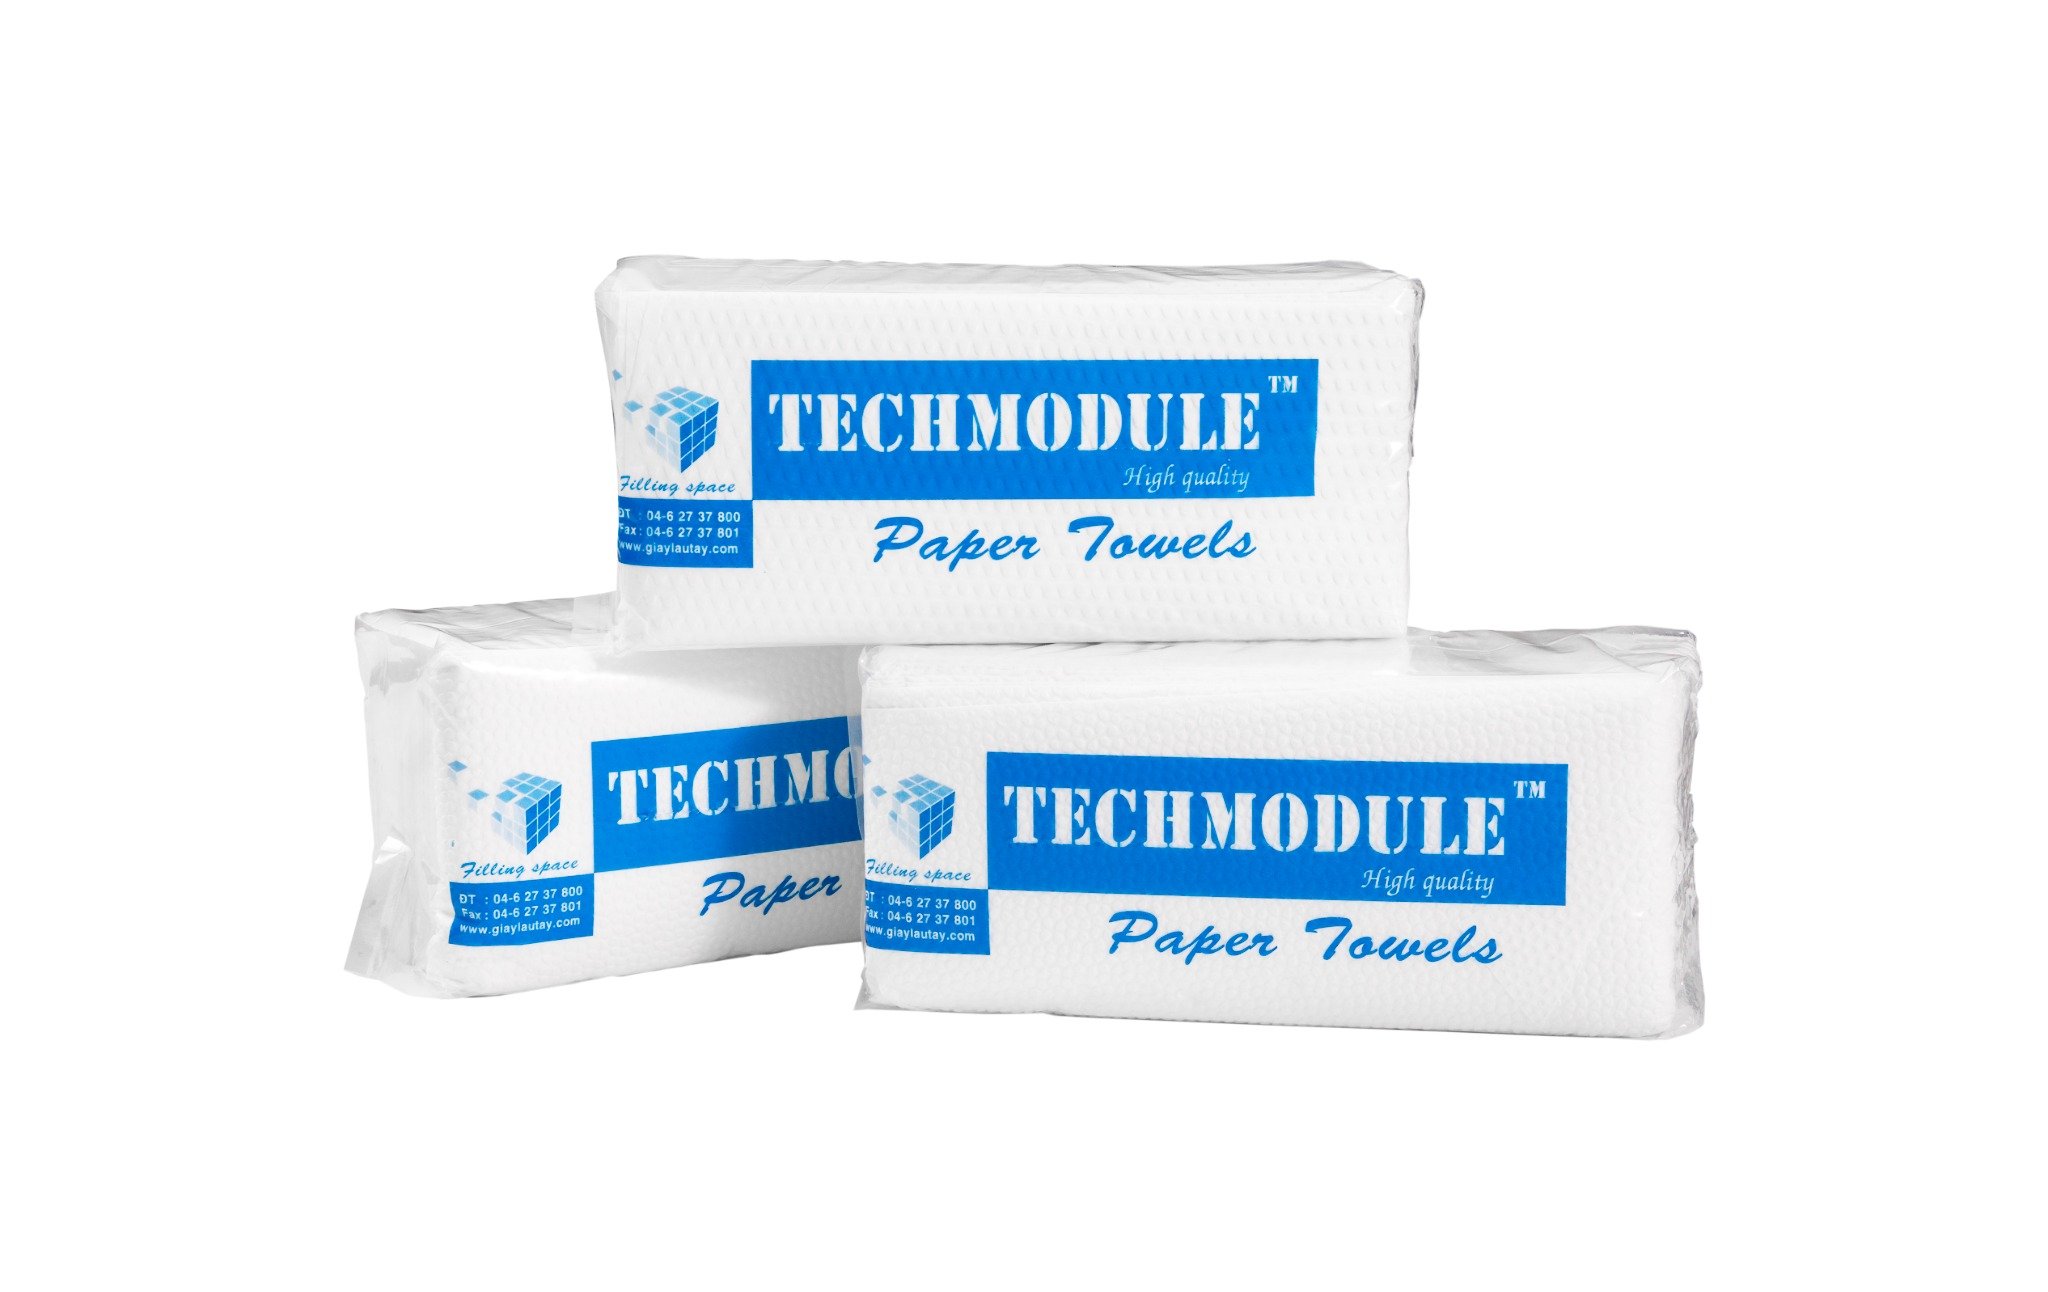 Khám phá sức mạnh vệ sinh với Khăn giấy lâu đa năng TMcare - Trải nghiệm thực tế